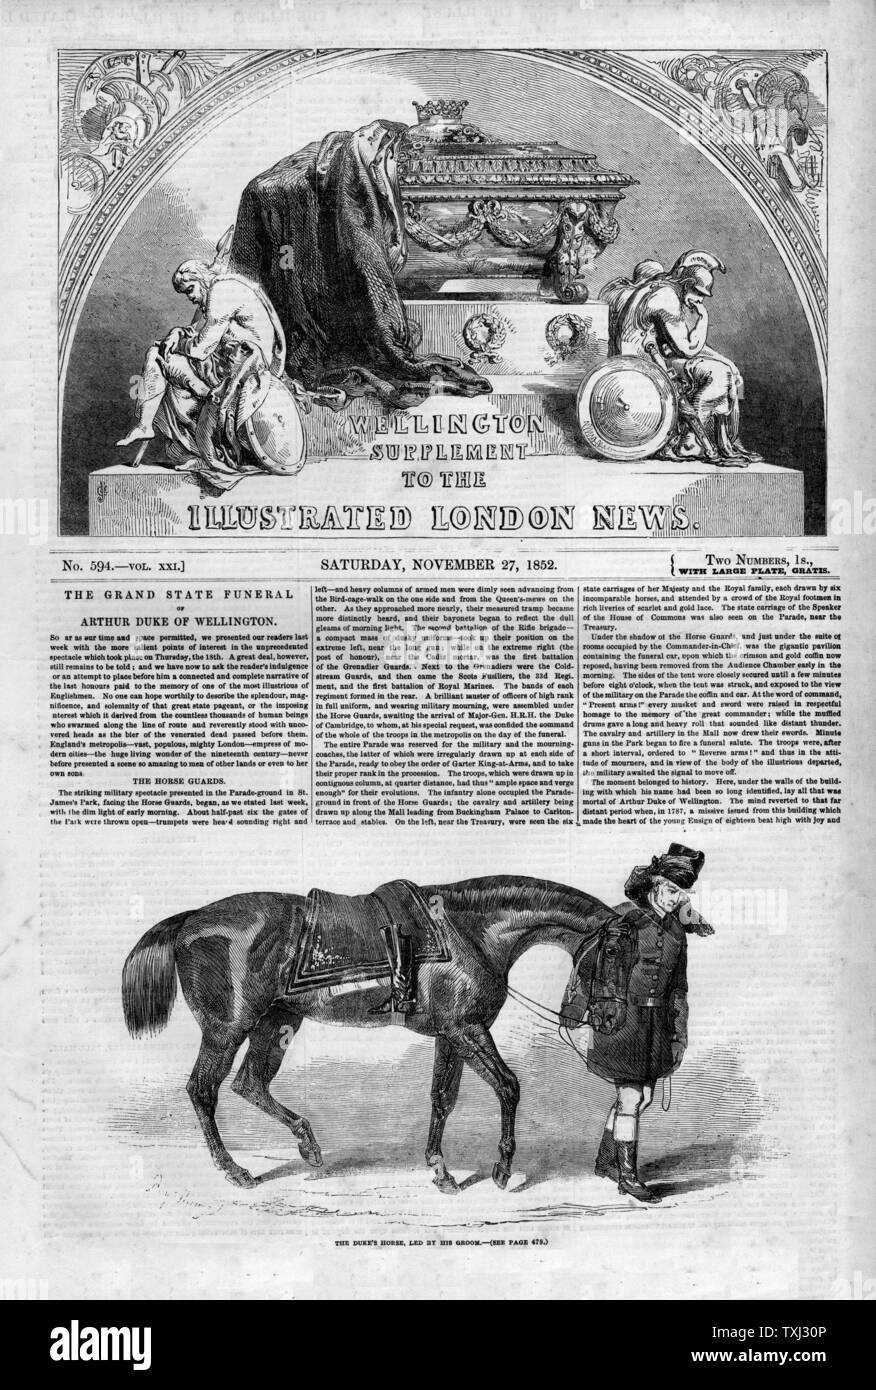 1852 Illustrated London News front page reporting les obsèques du duc de Wellington Banque D'Images